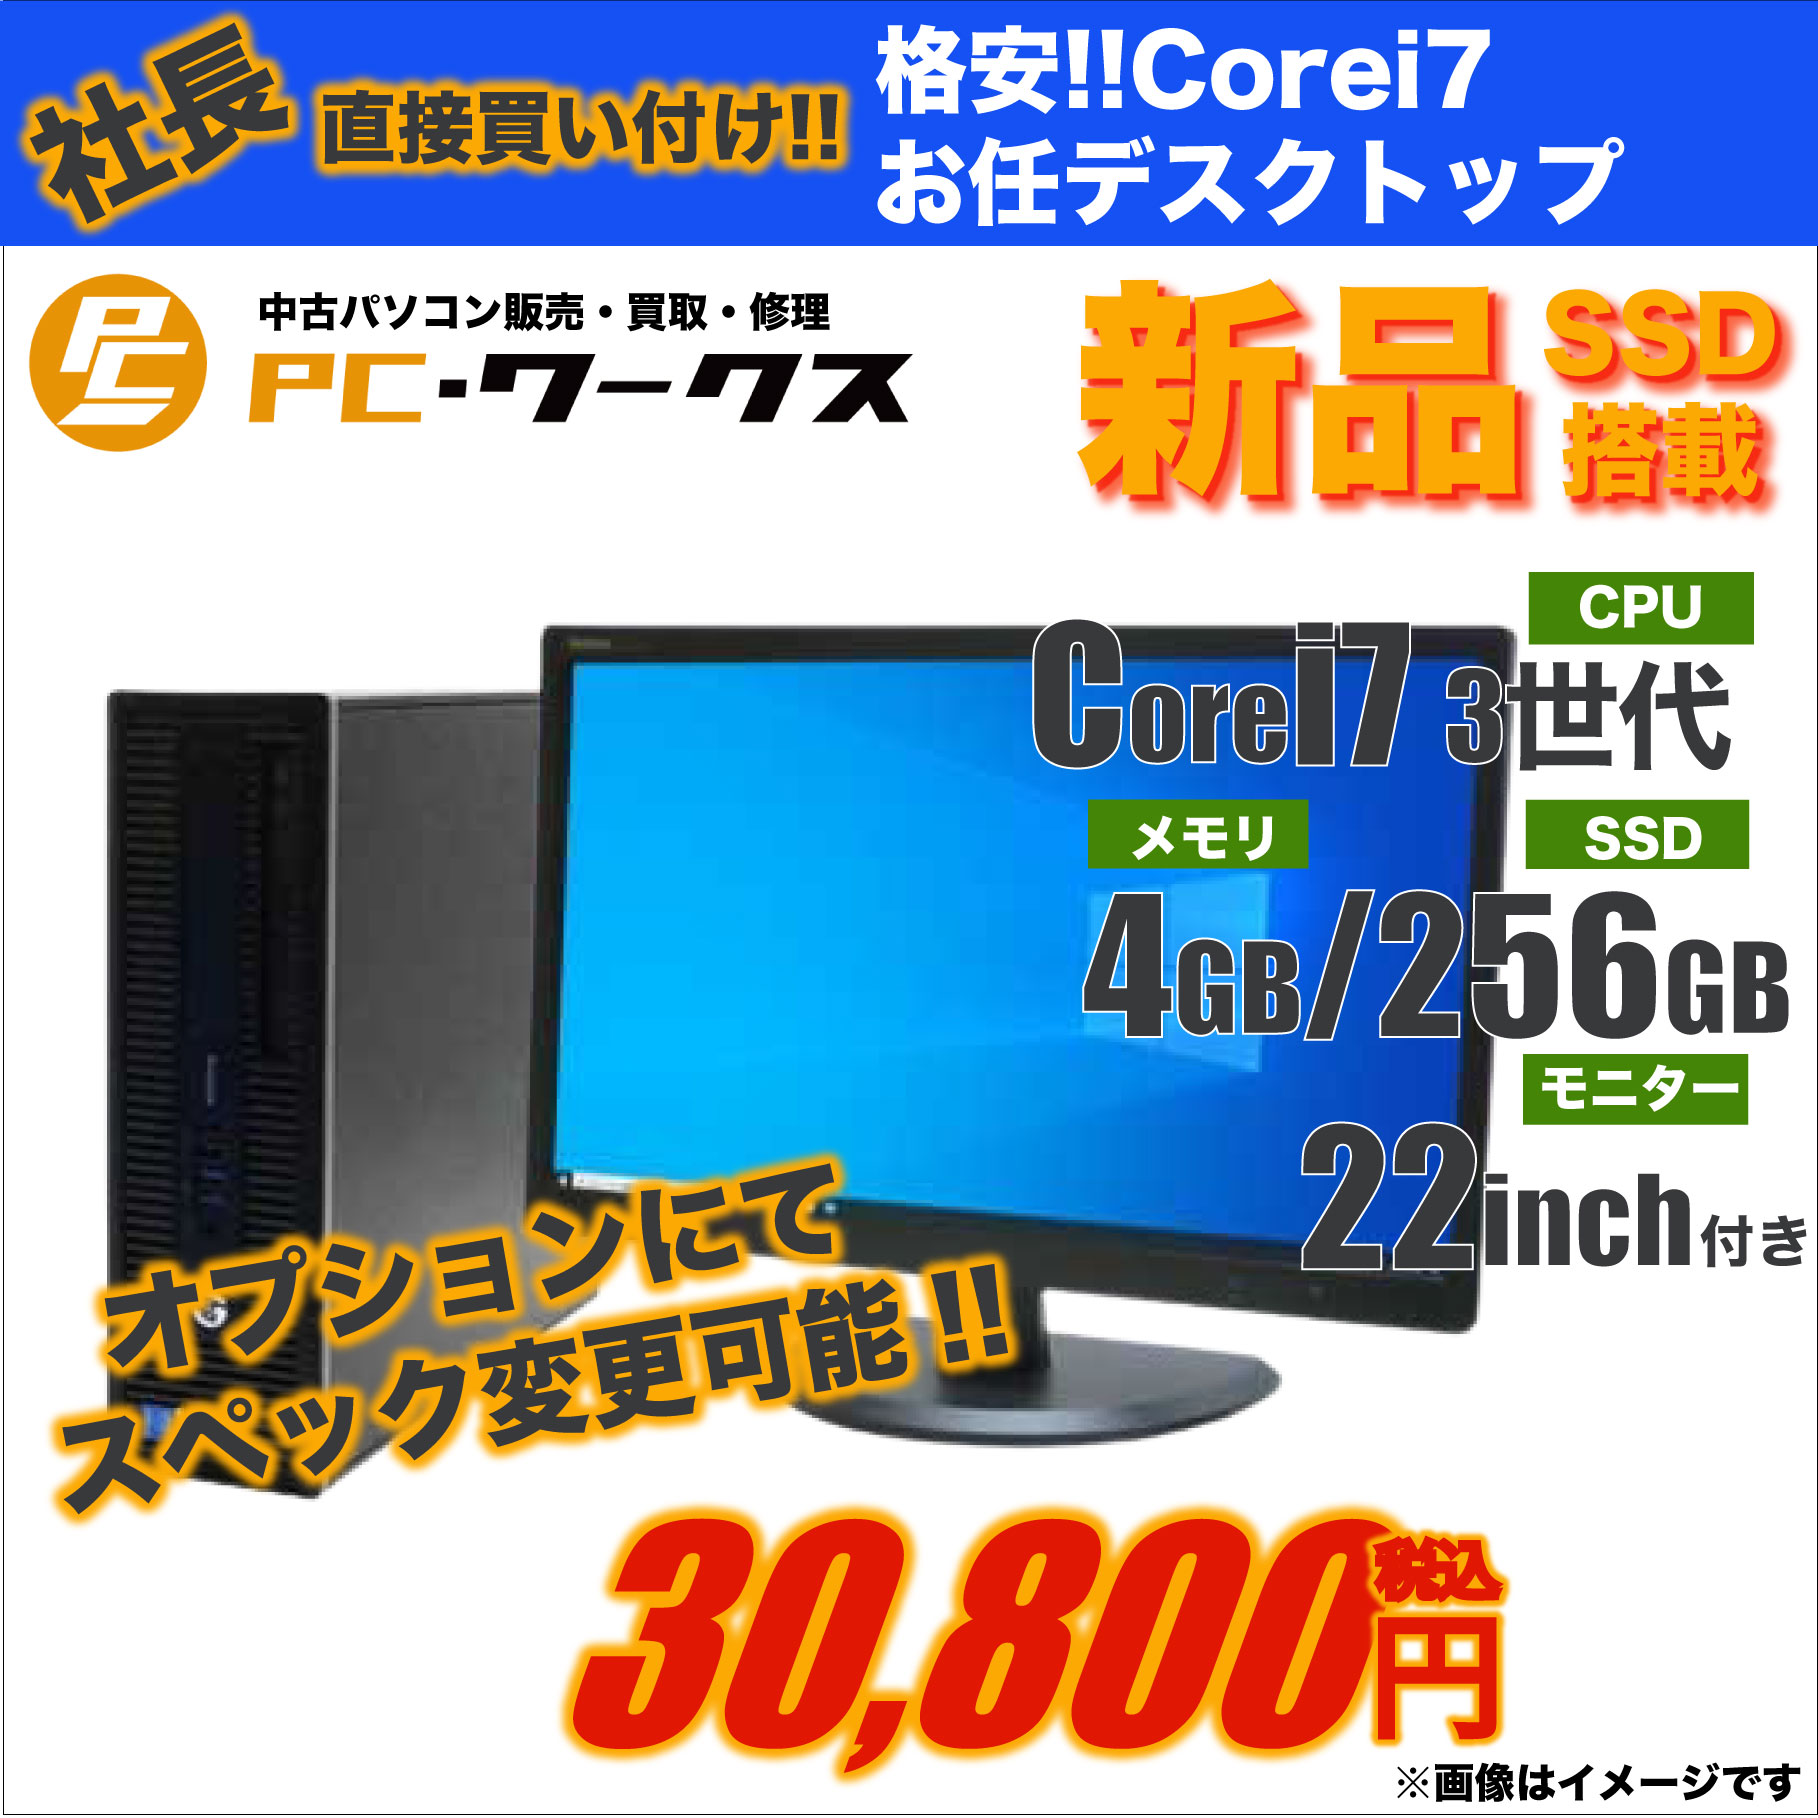 格安!!Corei7お任せデスクトップパソコン/22inchモニター